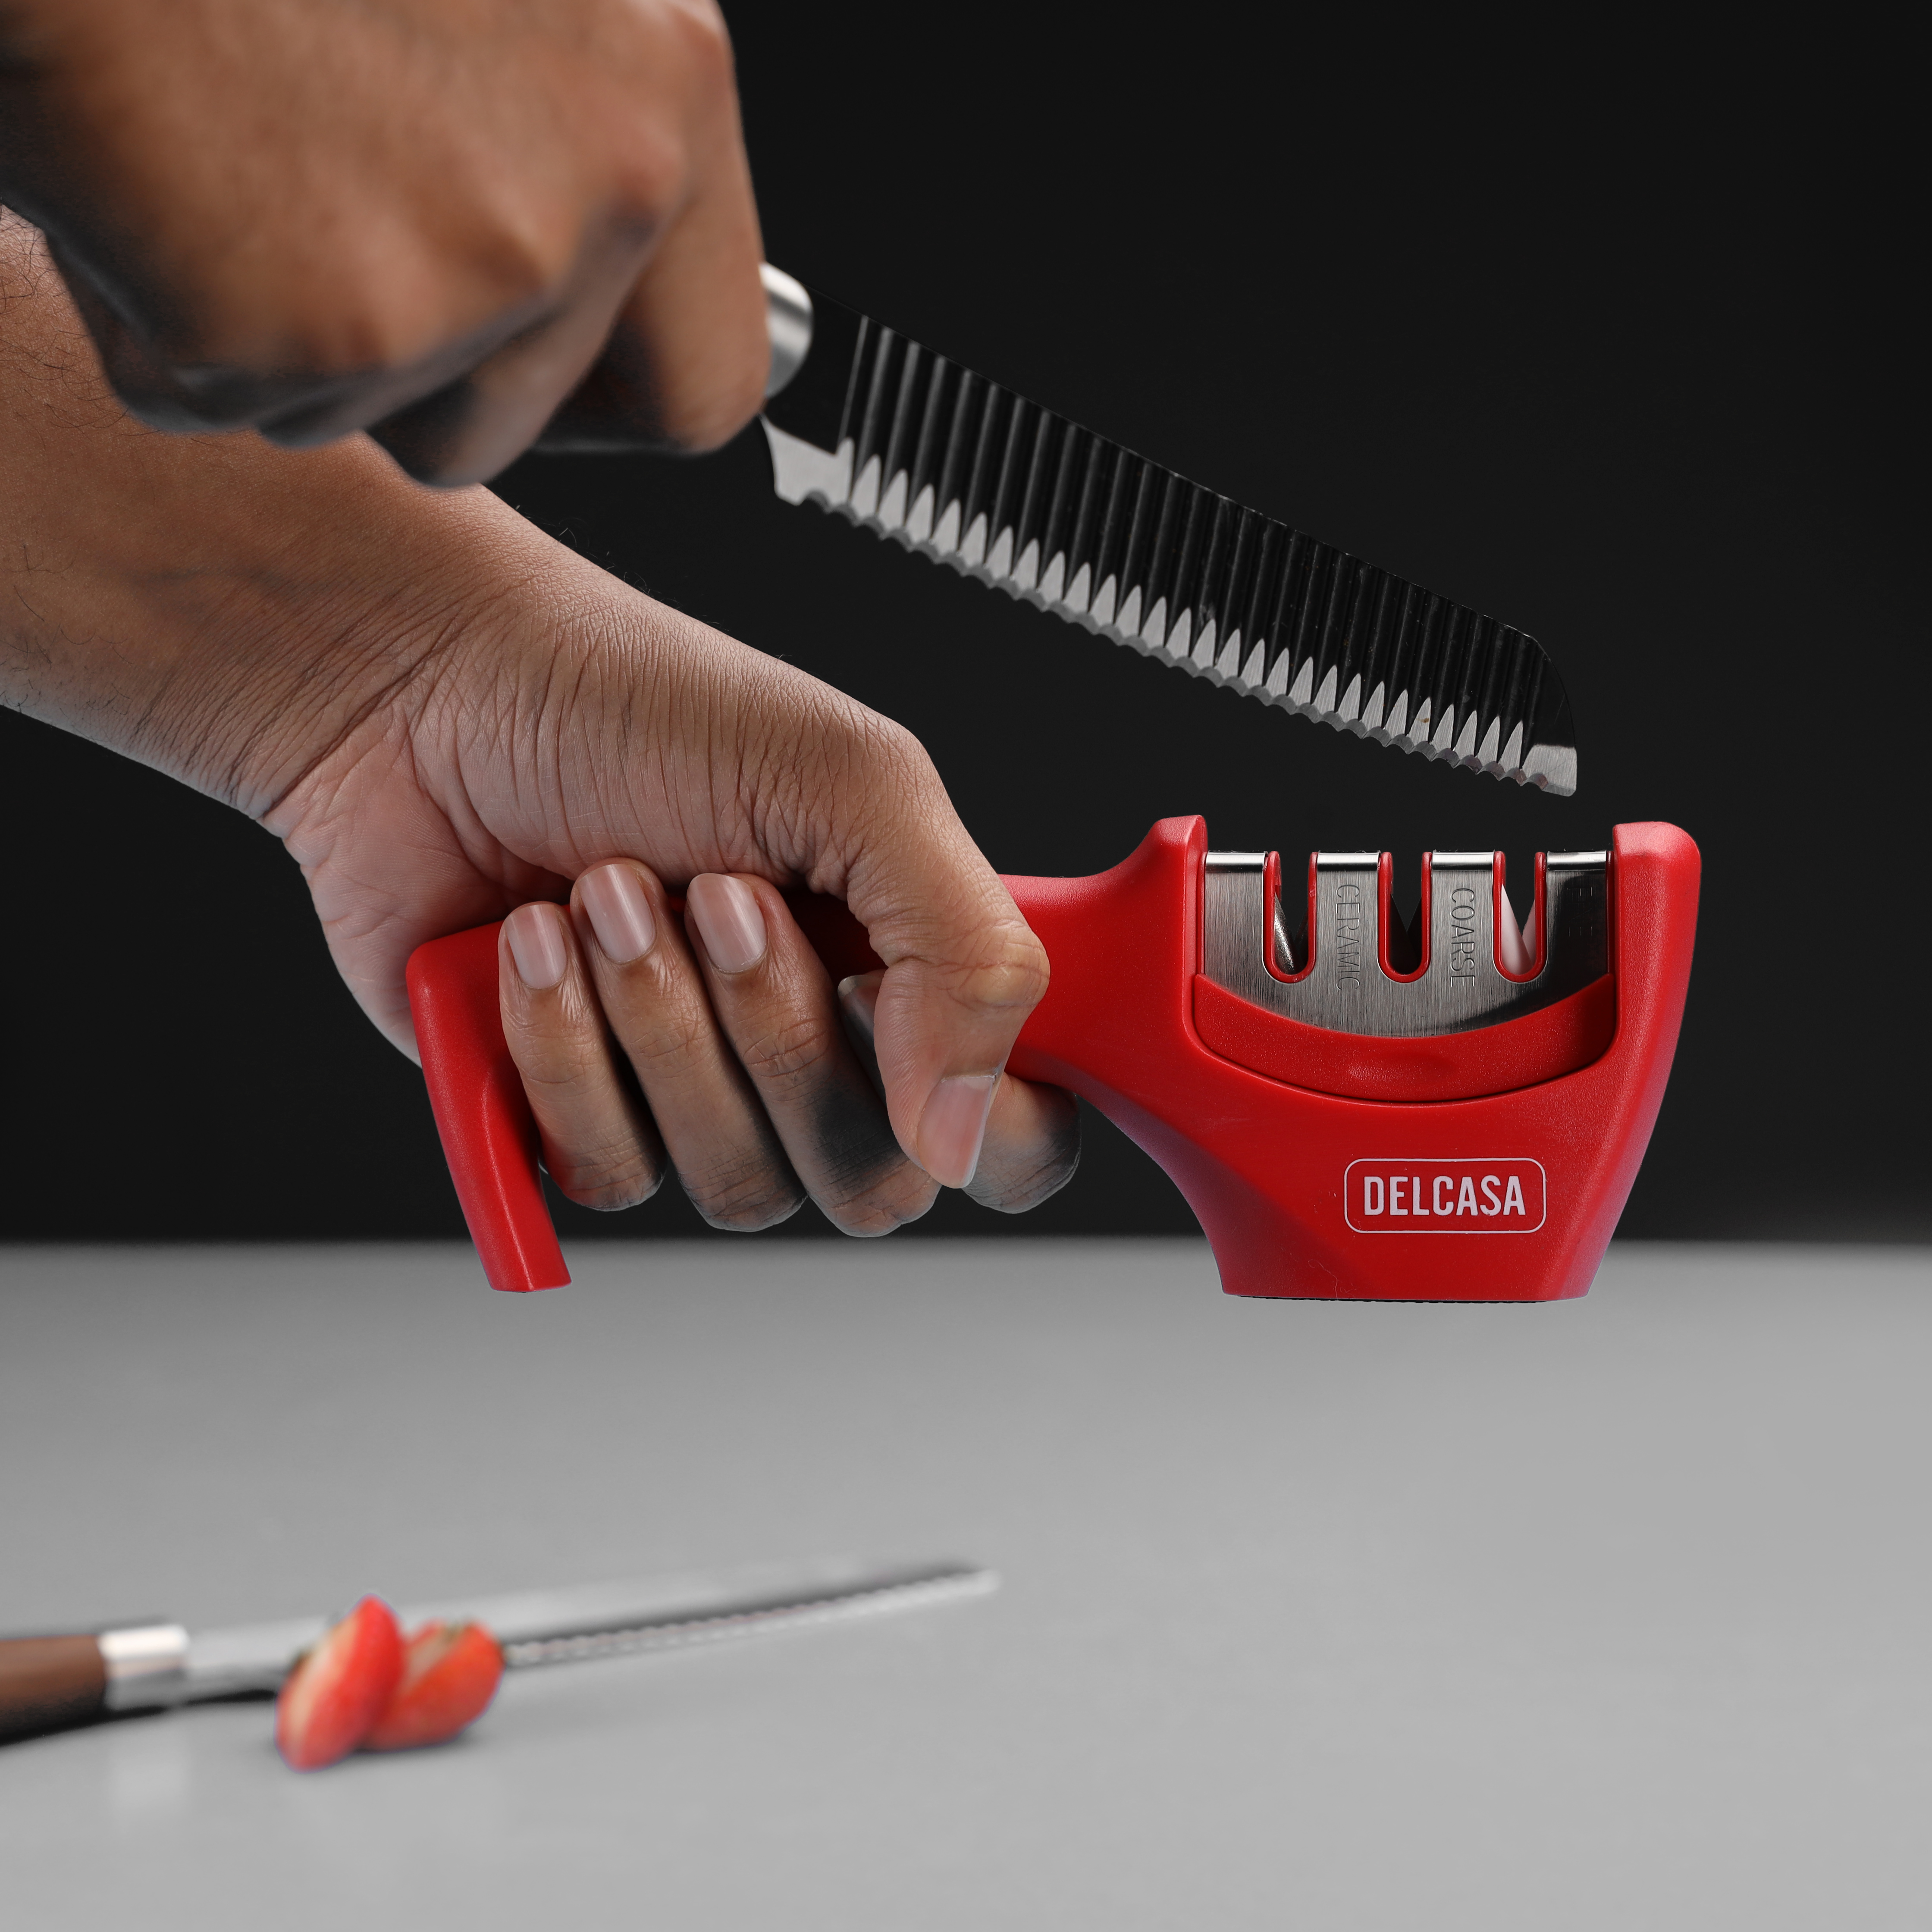 USB Electric Knife Sharpener Adjustable For Kitchen Knives Tool Knife –  Knife Depot Co.